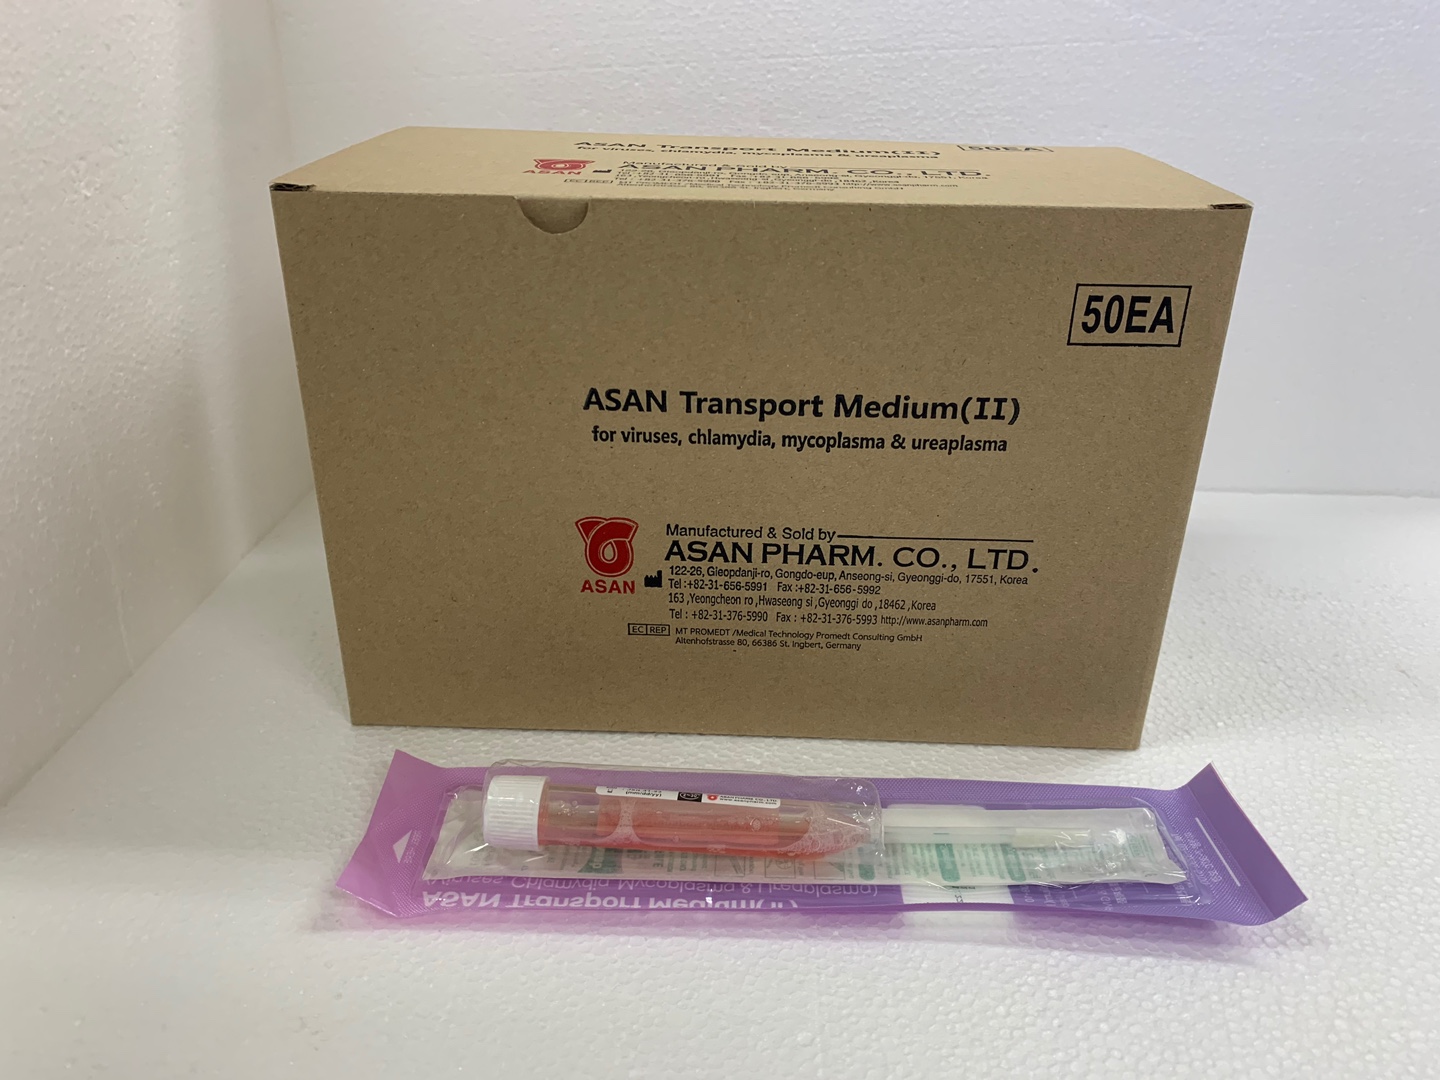 ASAN Transport Medium (II) Blister